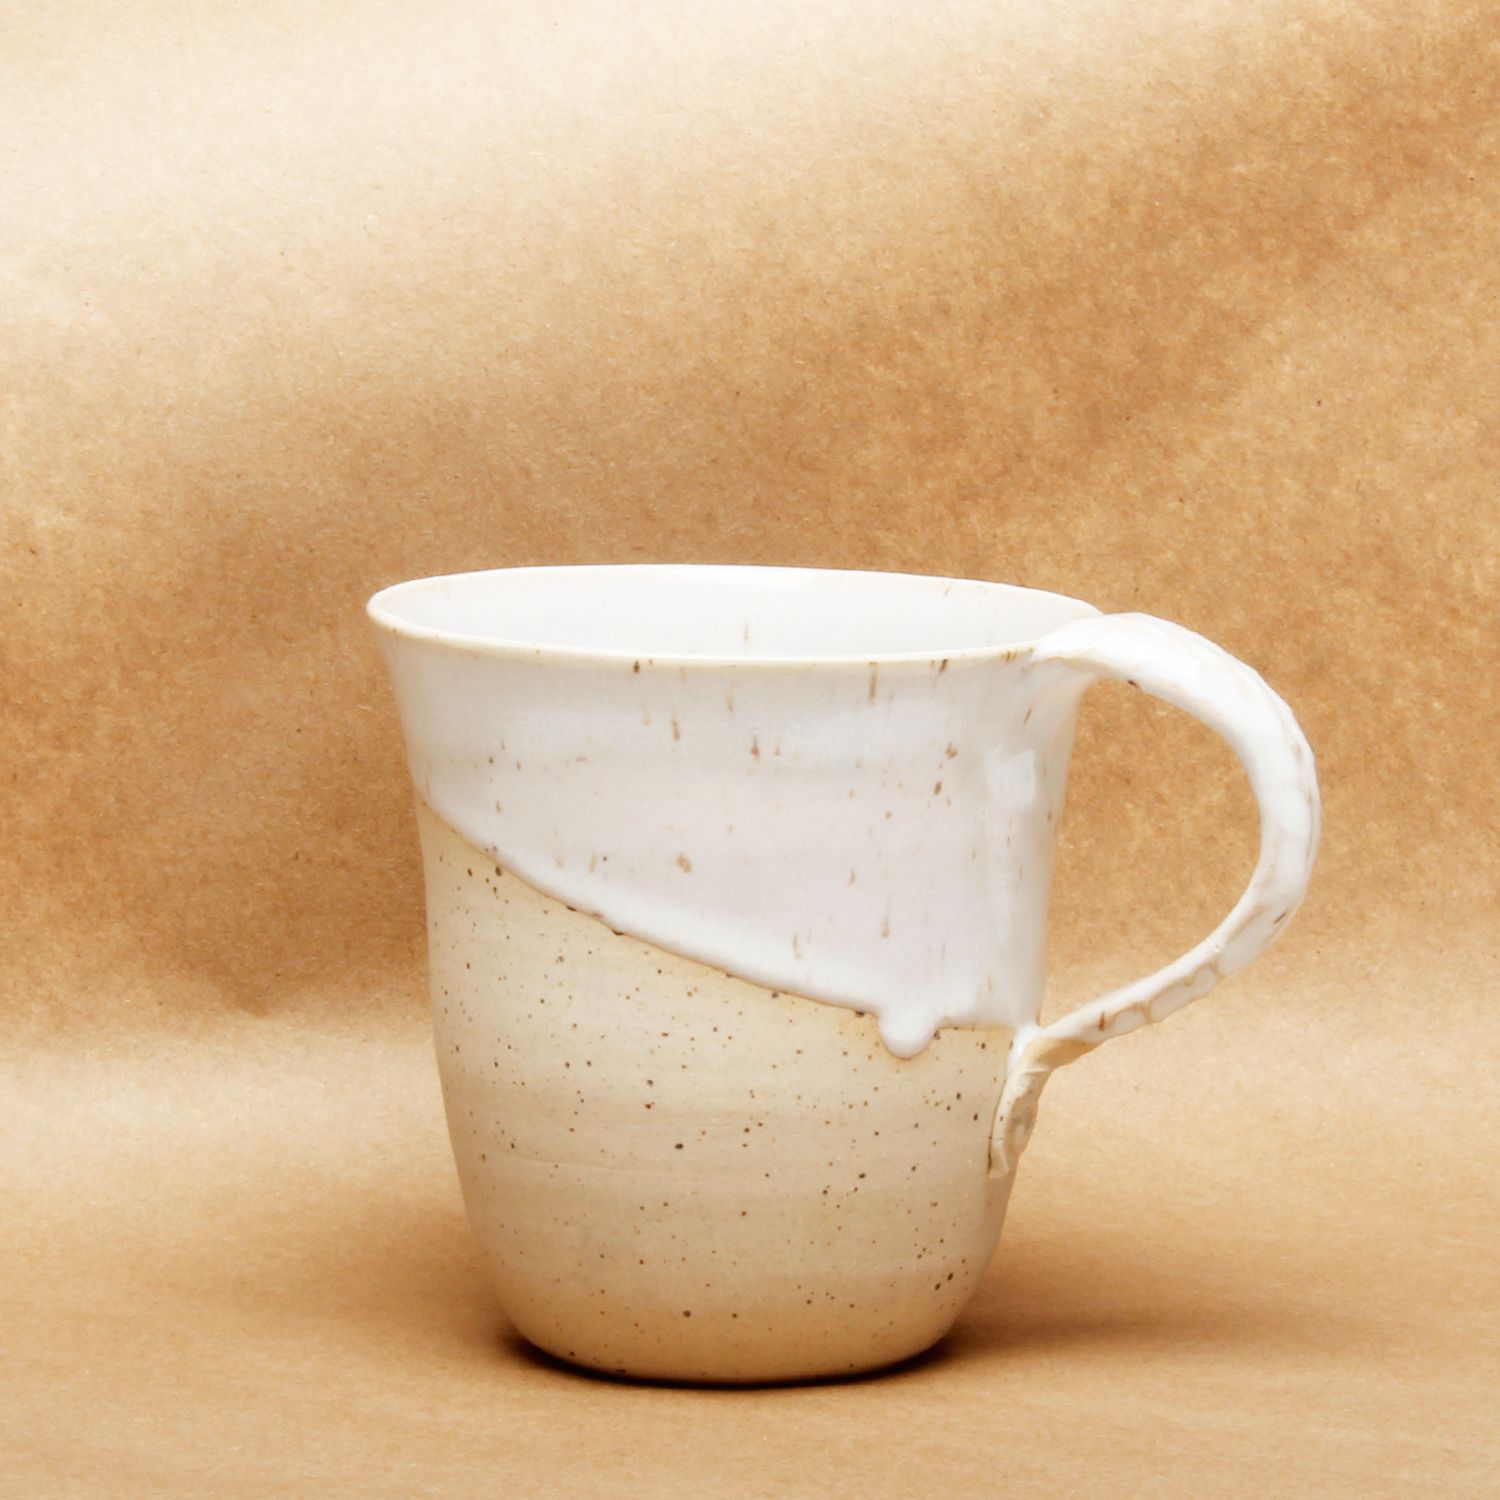 Catharina Goldnau: Medium Speckled White Mug Product Image 1 of 4